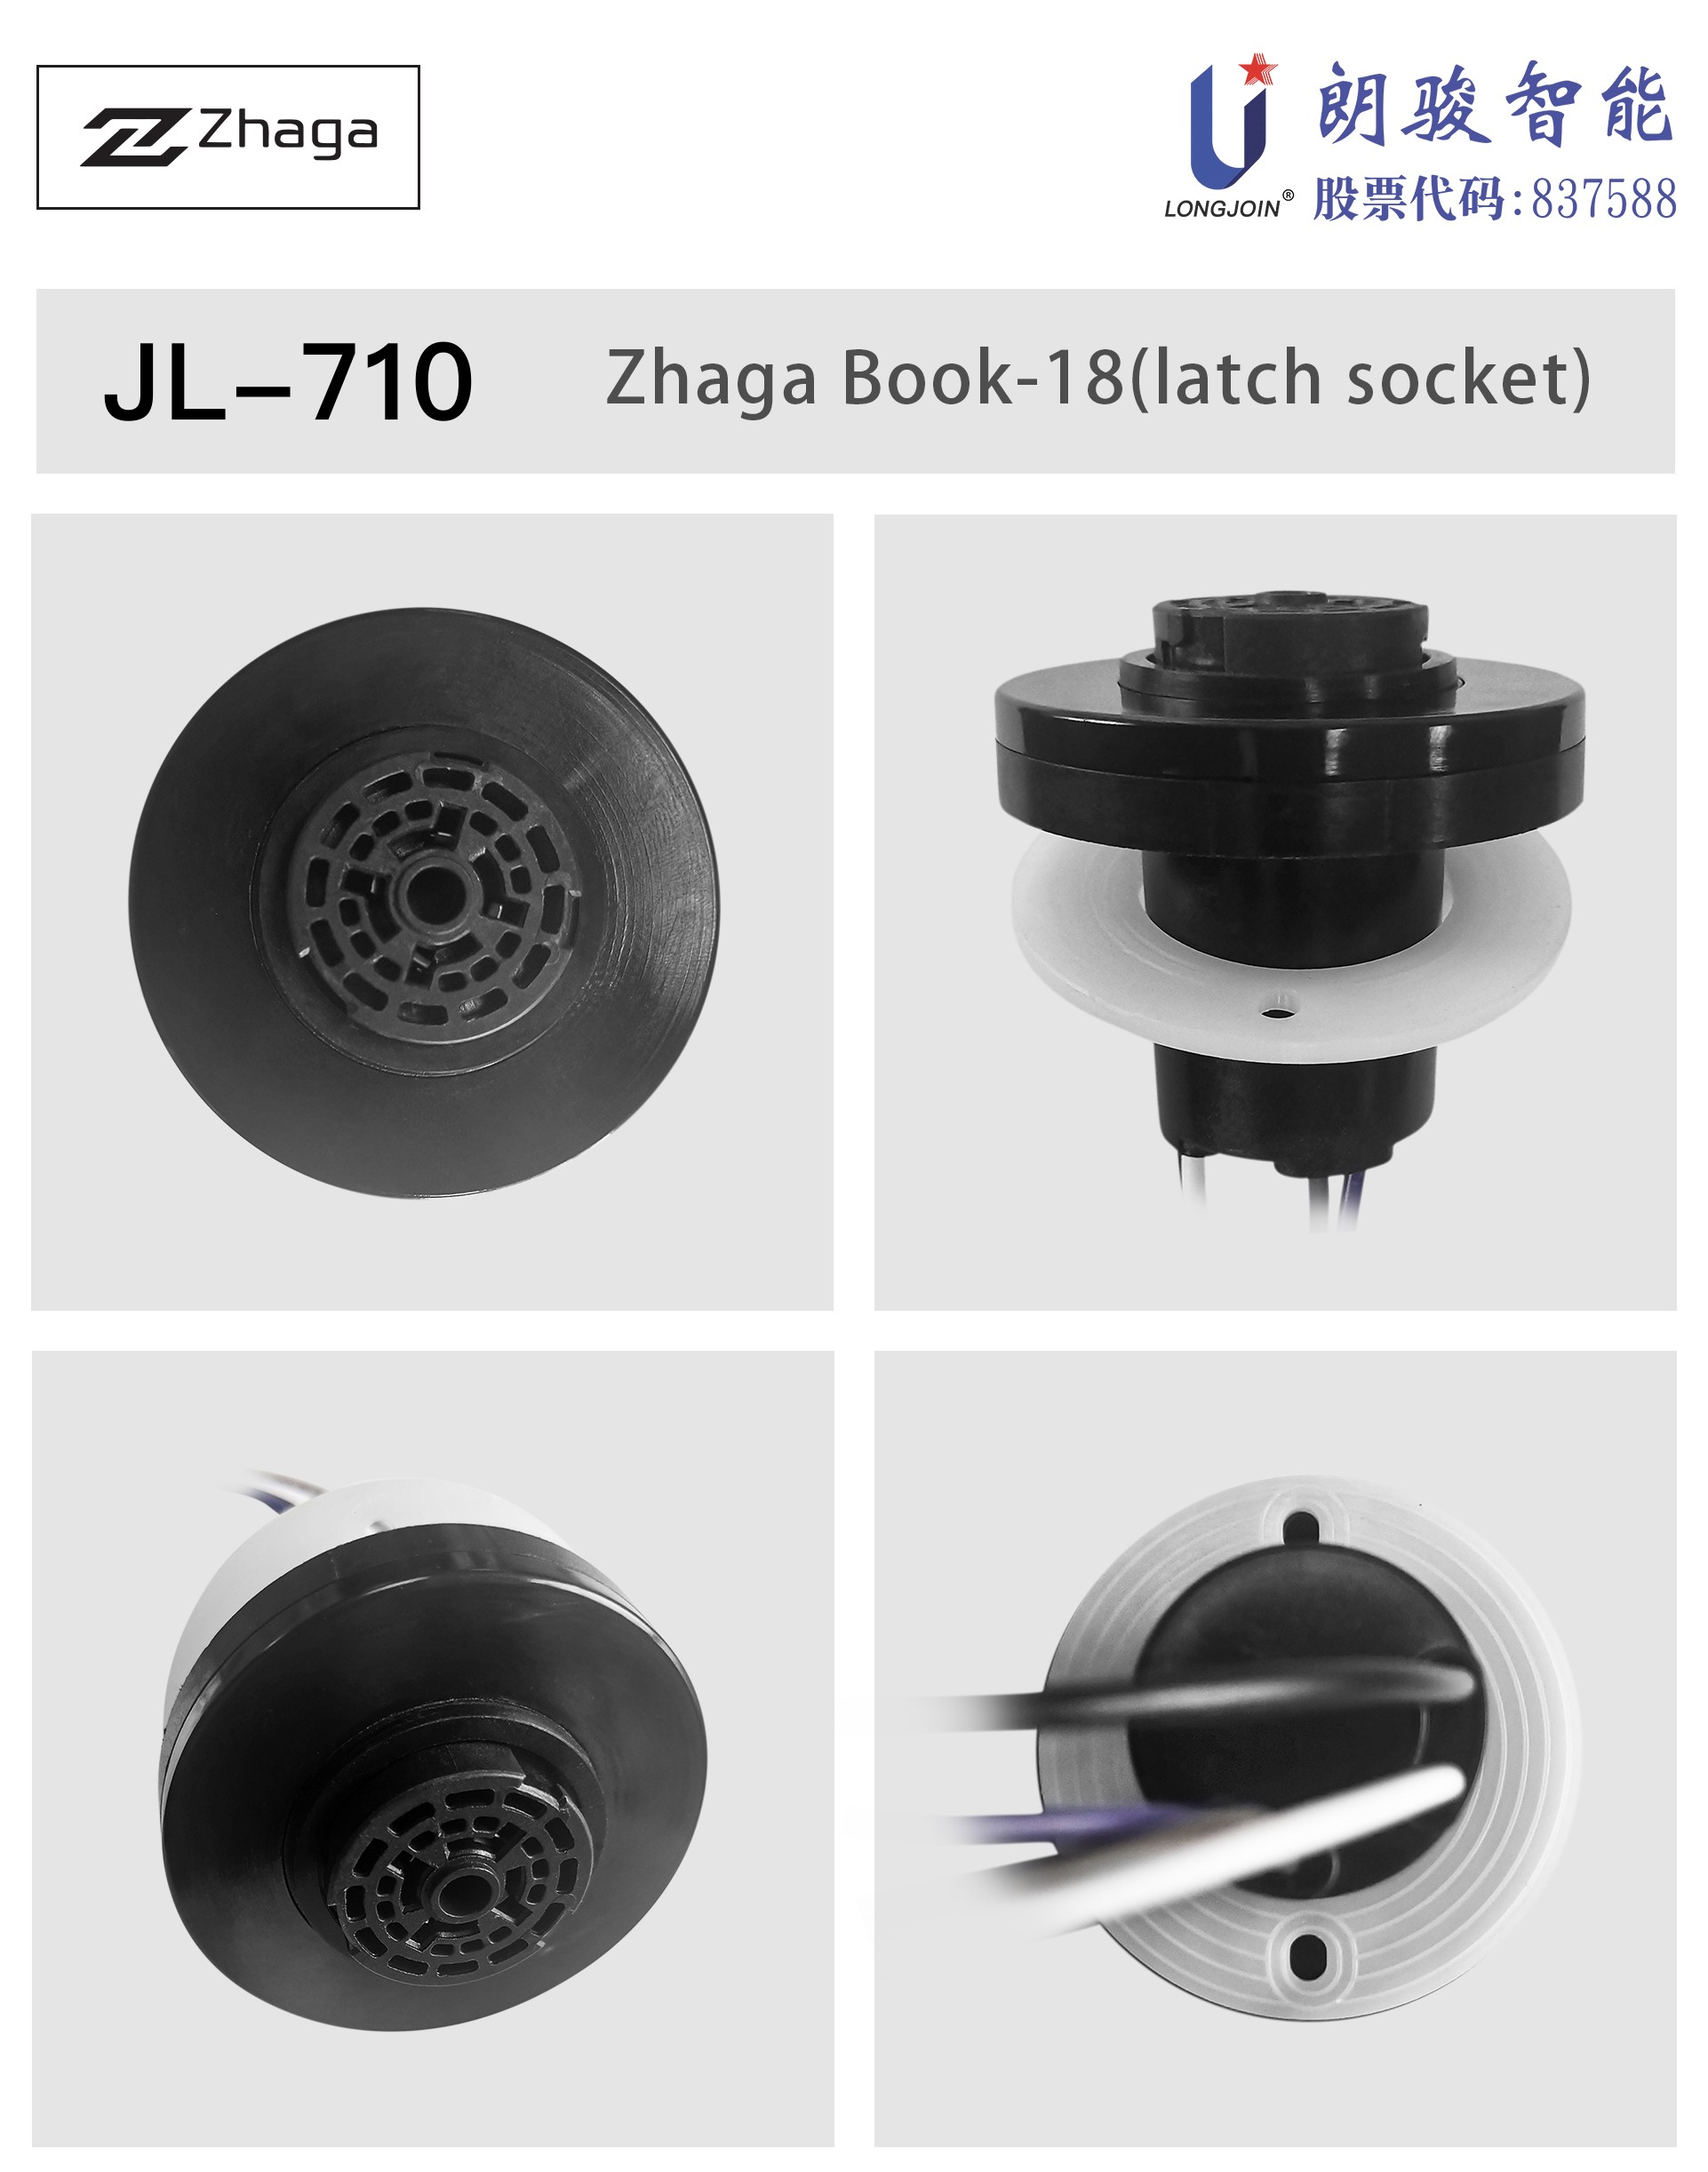 英文版1-JL-710-产品图片.jpg